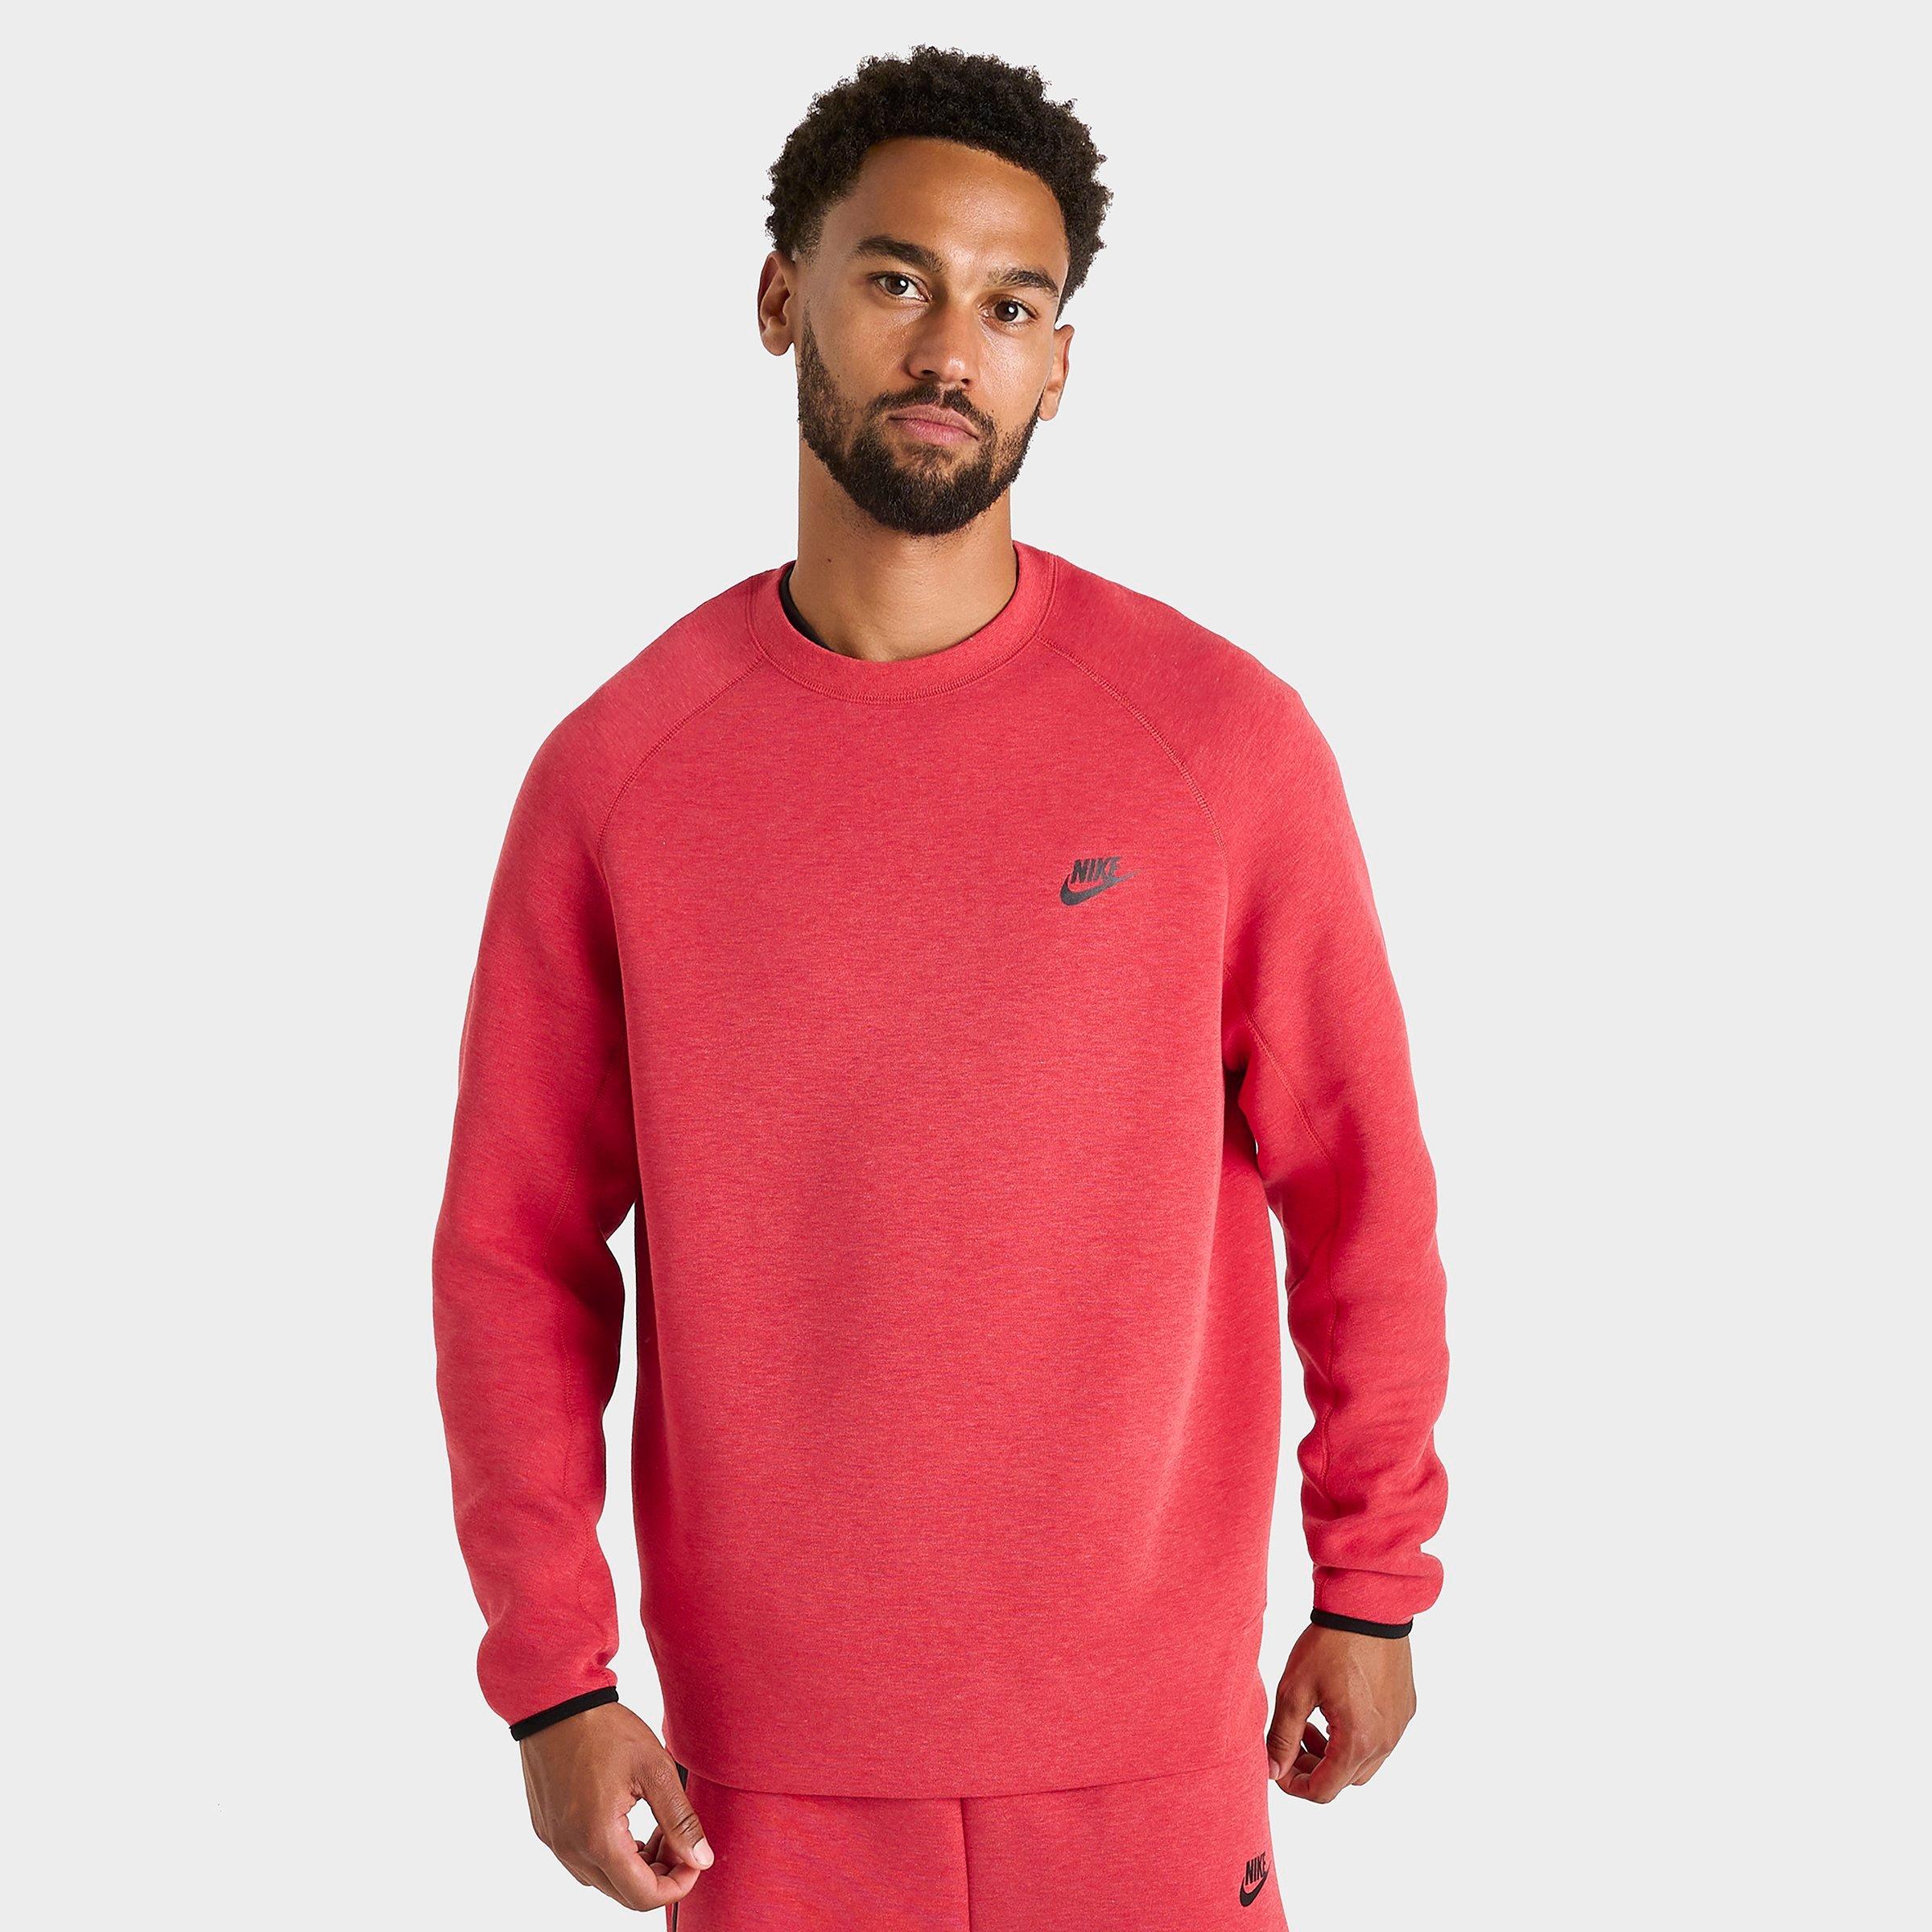 Men's Nike Tech Fleece Crew Black Sweatshirt